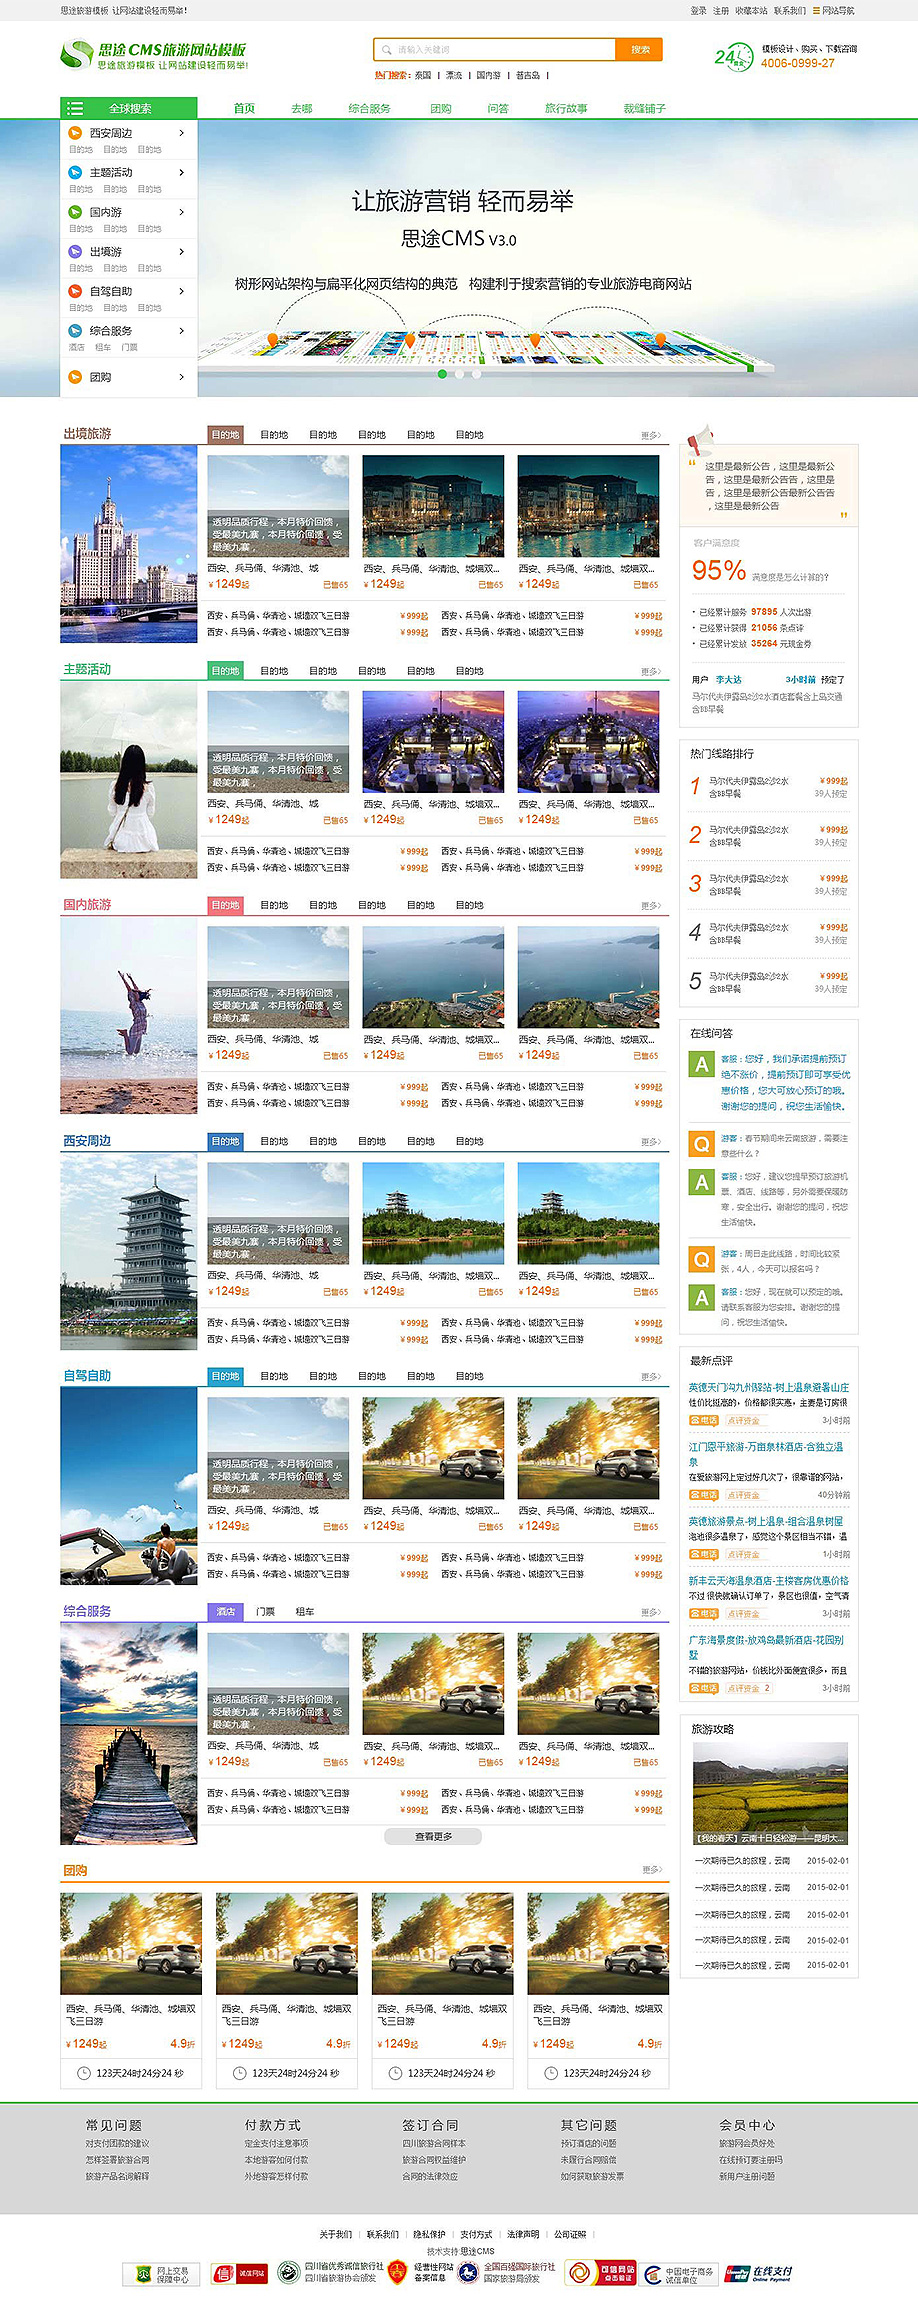 仿途牛首页大中型旅游网站模板首页设计方案（网站首页模板）